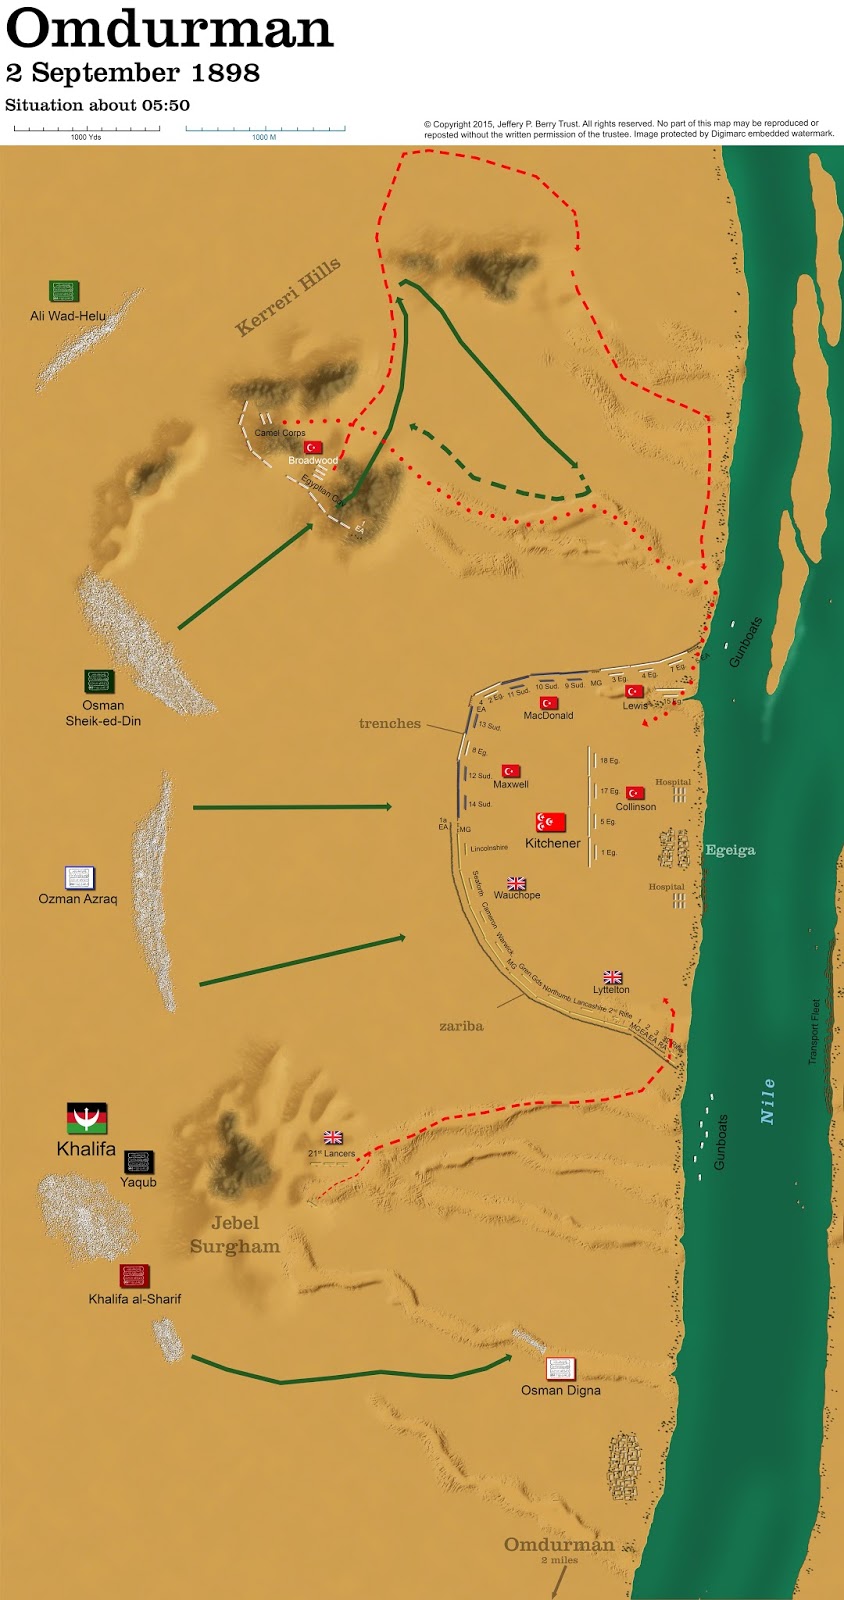 Decision Games Wargame Khartoum Sudan 1883 to 1885 for sale online 